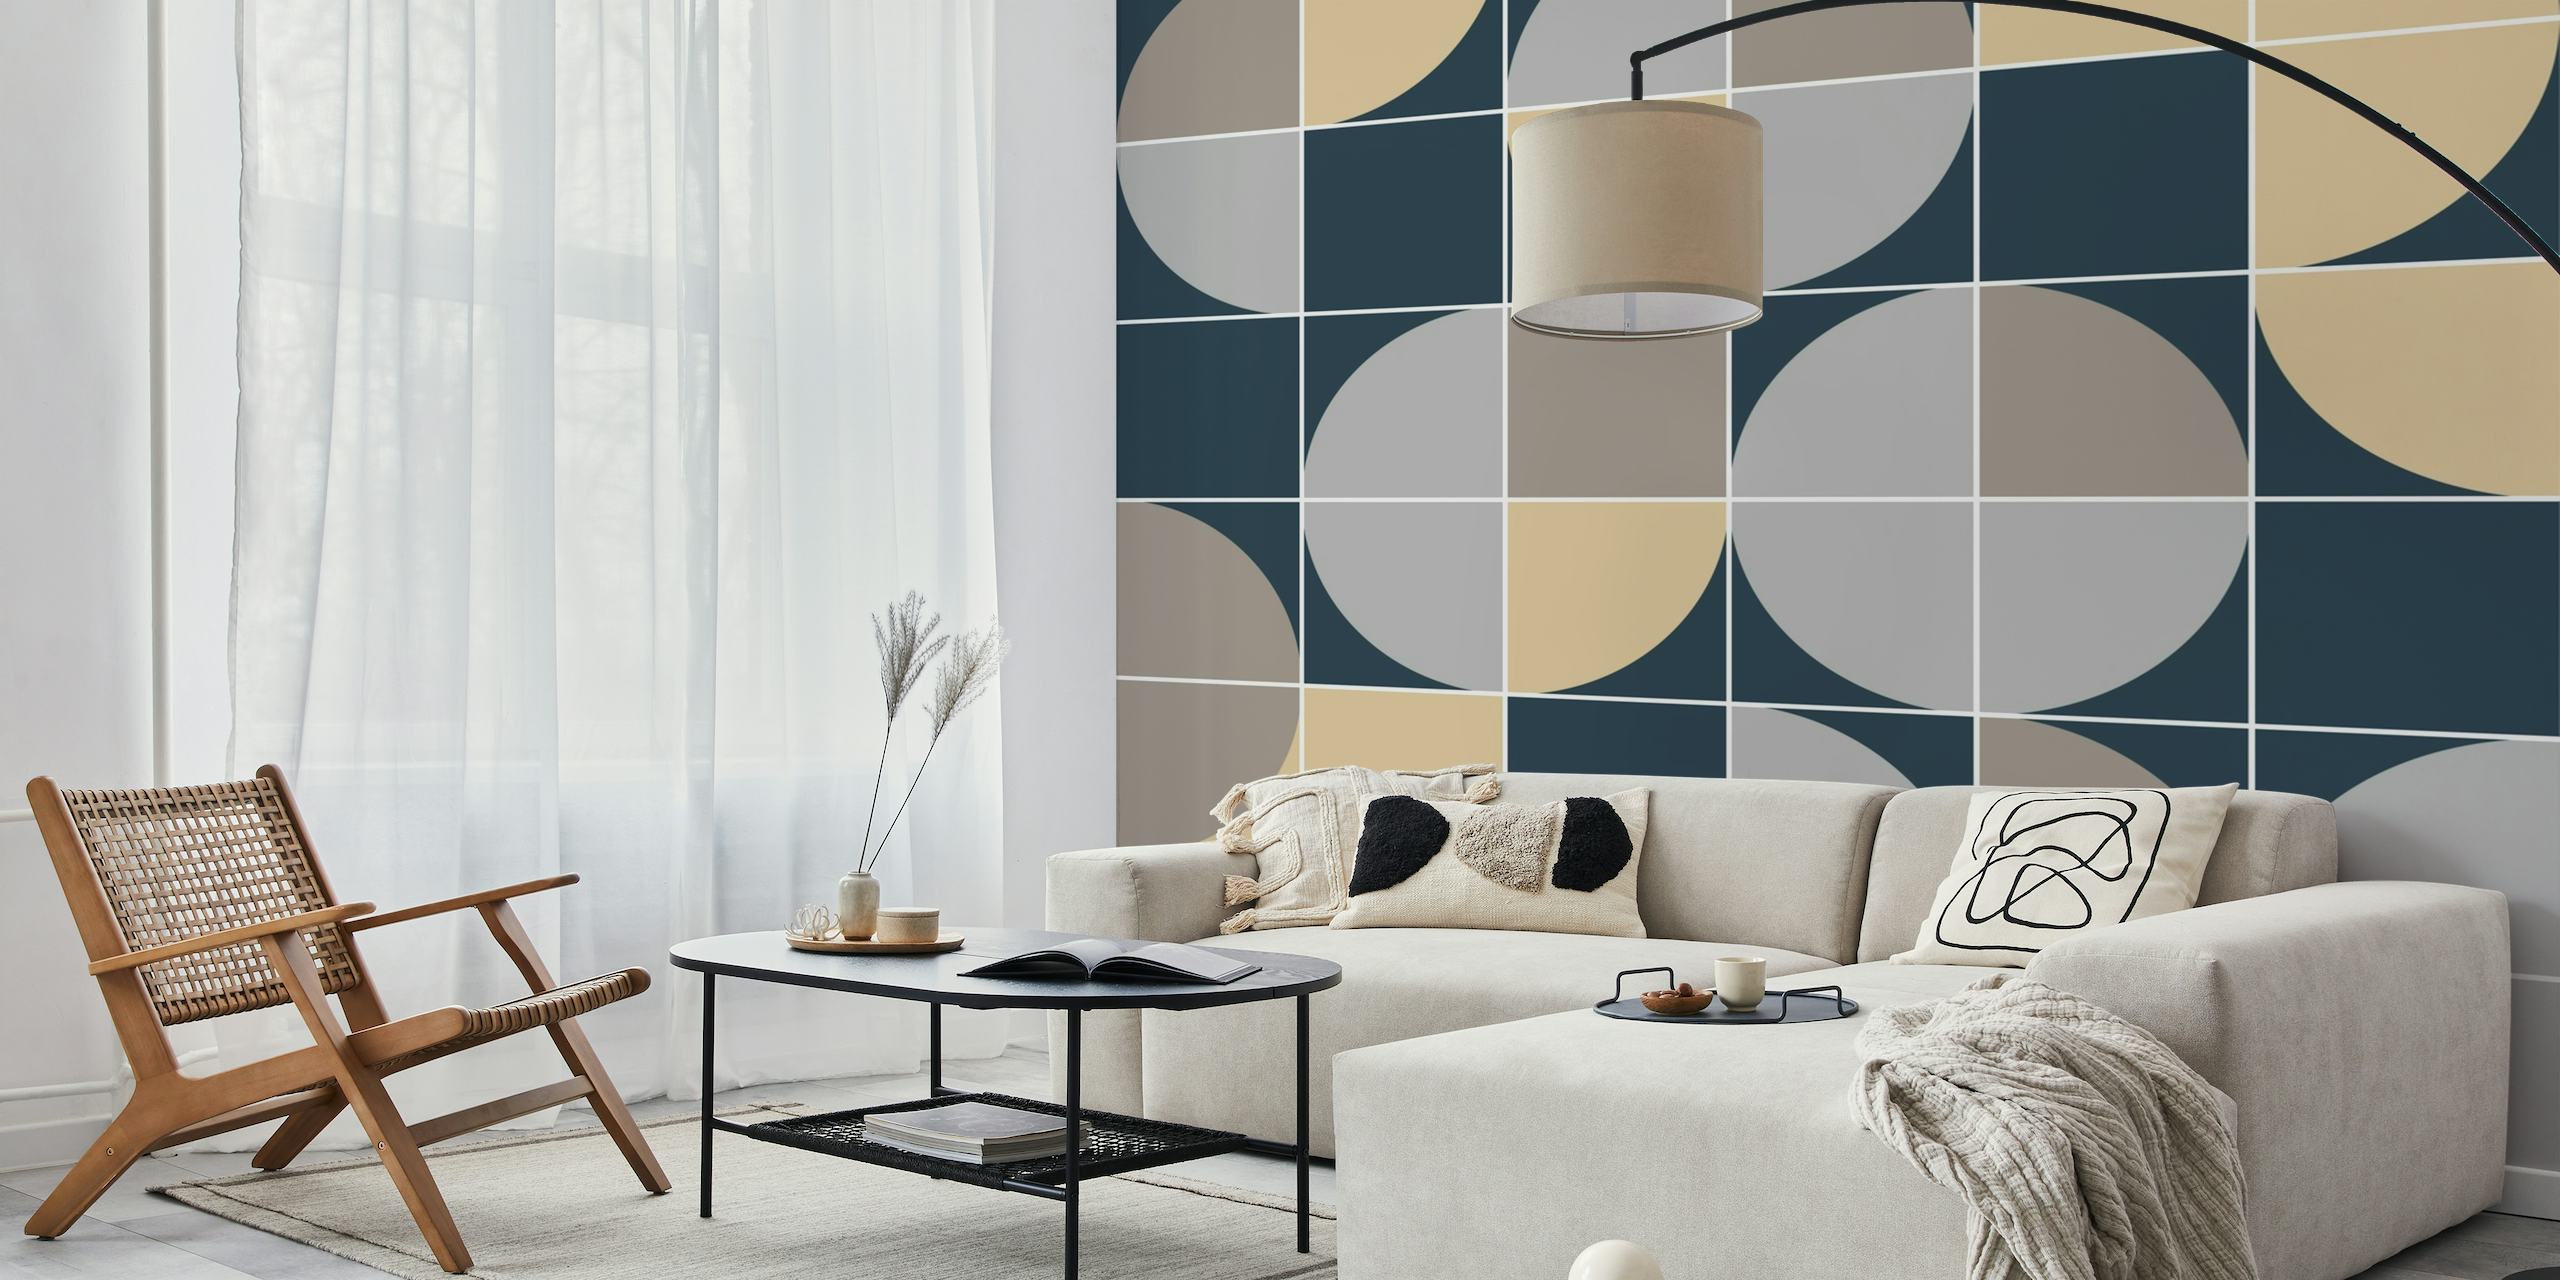 Mural de parede retrô mod círculo abstrato com padrão geométrico em tons de bege, marinho e cinza